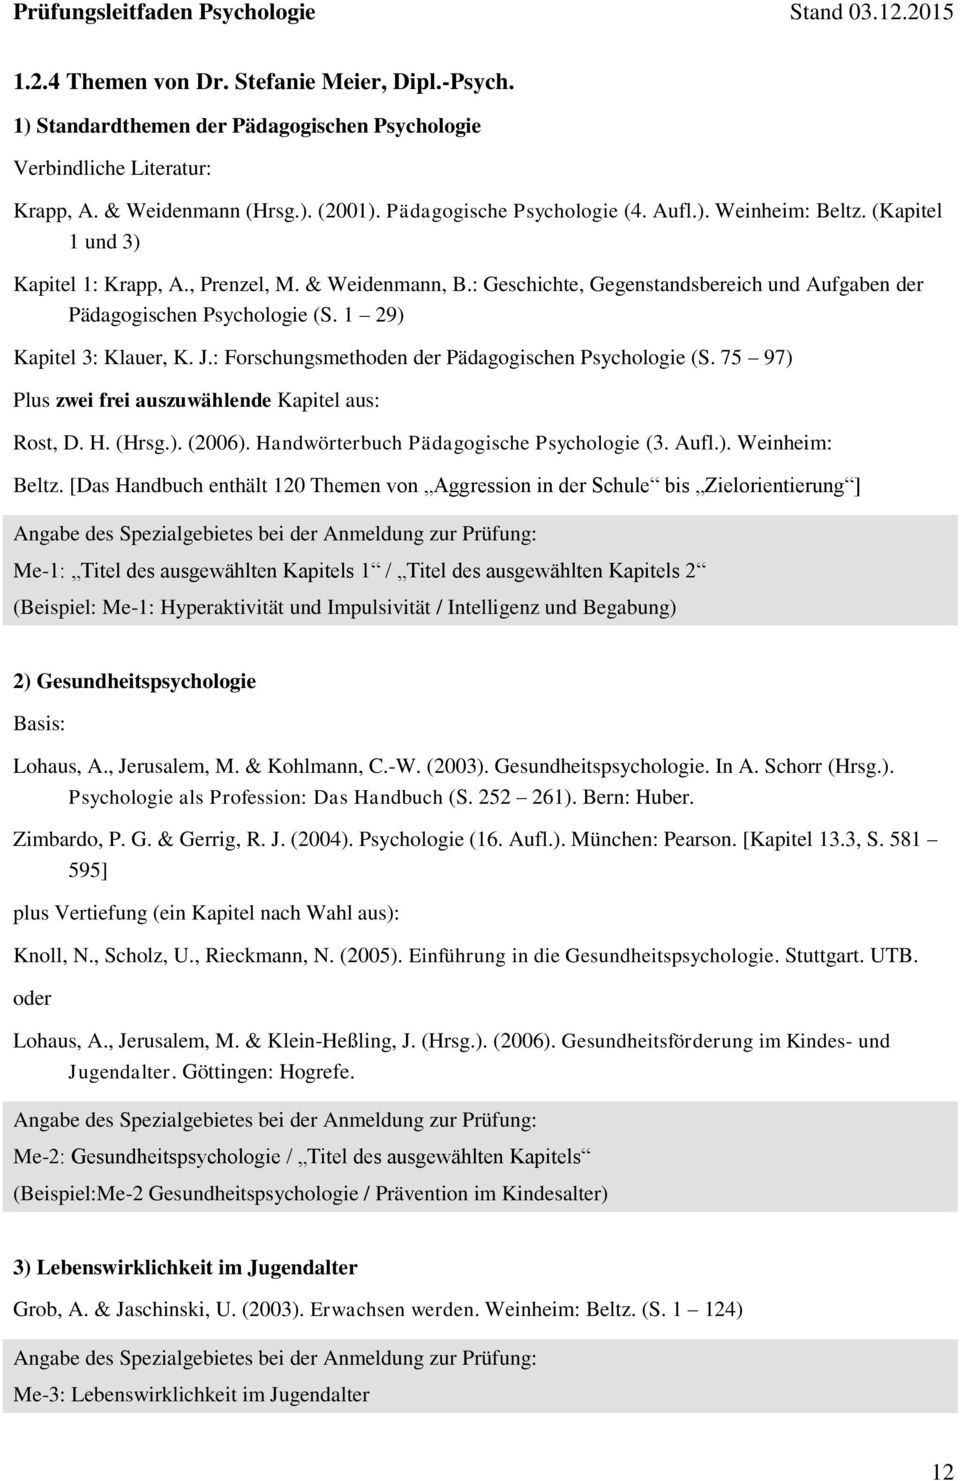 : Forschungsmethoden der Pädagogischen Psychologie (S. 75 97) Plus zwei frei auszuwählende Kapitel aus: Rost, D. H. (Hrsg.). (2006). Handwörterbuch Pädagogische Psychologie (3. Aufl.). Weinheim: Beltz.